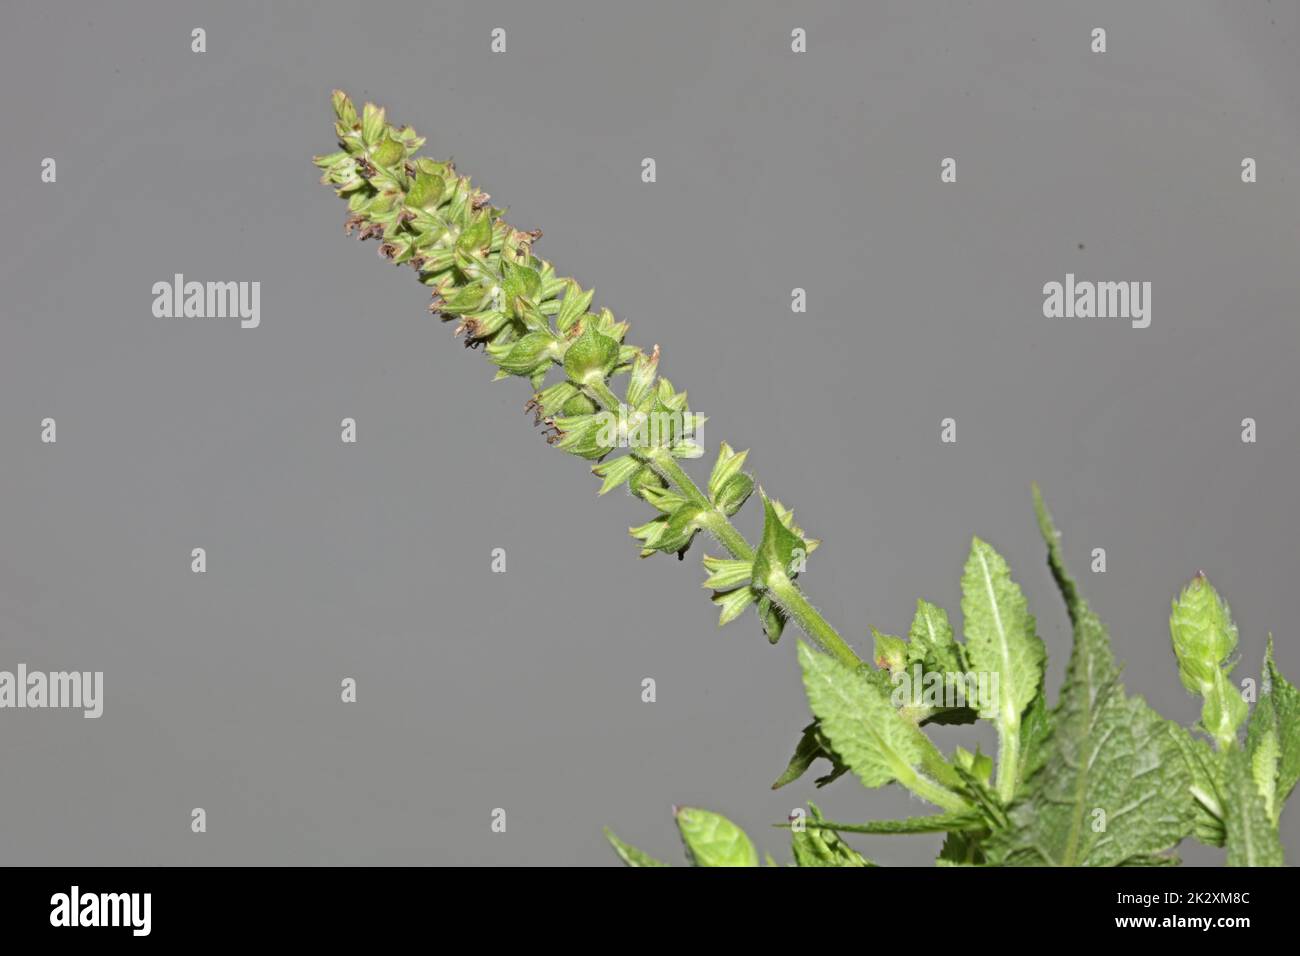 Fleur aromatique gros plan botanique de haute qualité grands tirages salvia pratensis famille lamiaceae affiche murale Banque D'Images